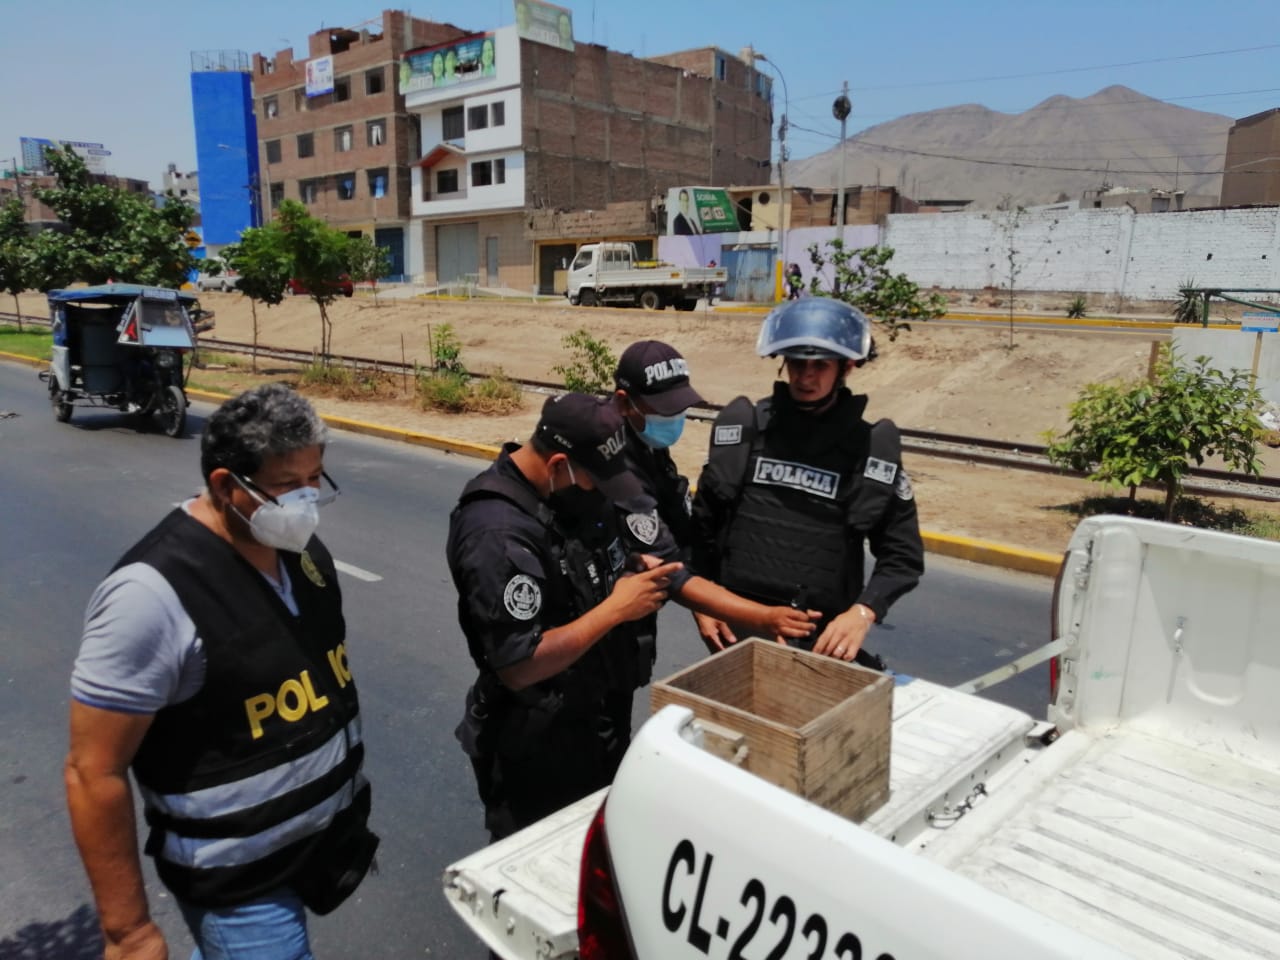 En Lima, los artificieros recuperan dos granadas sin detonar en una plaza pública gracias al intercambio de pistas durante la operación